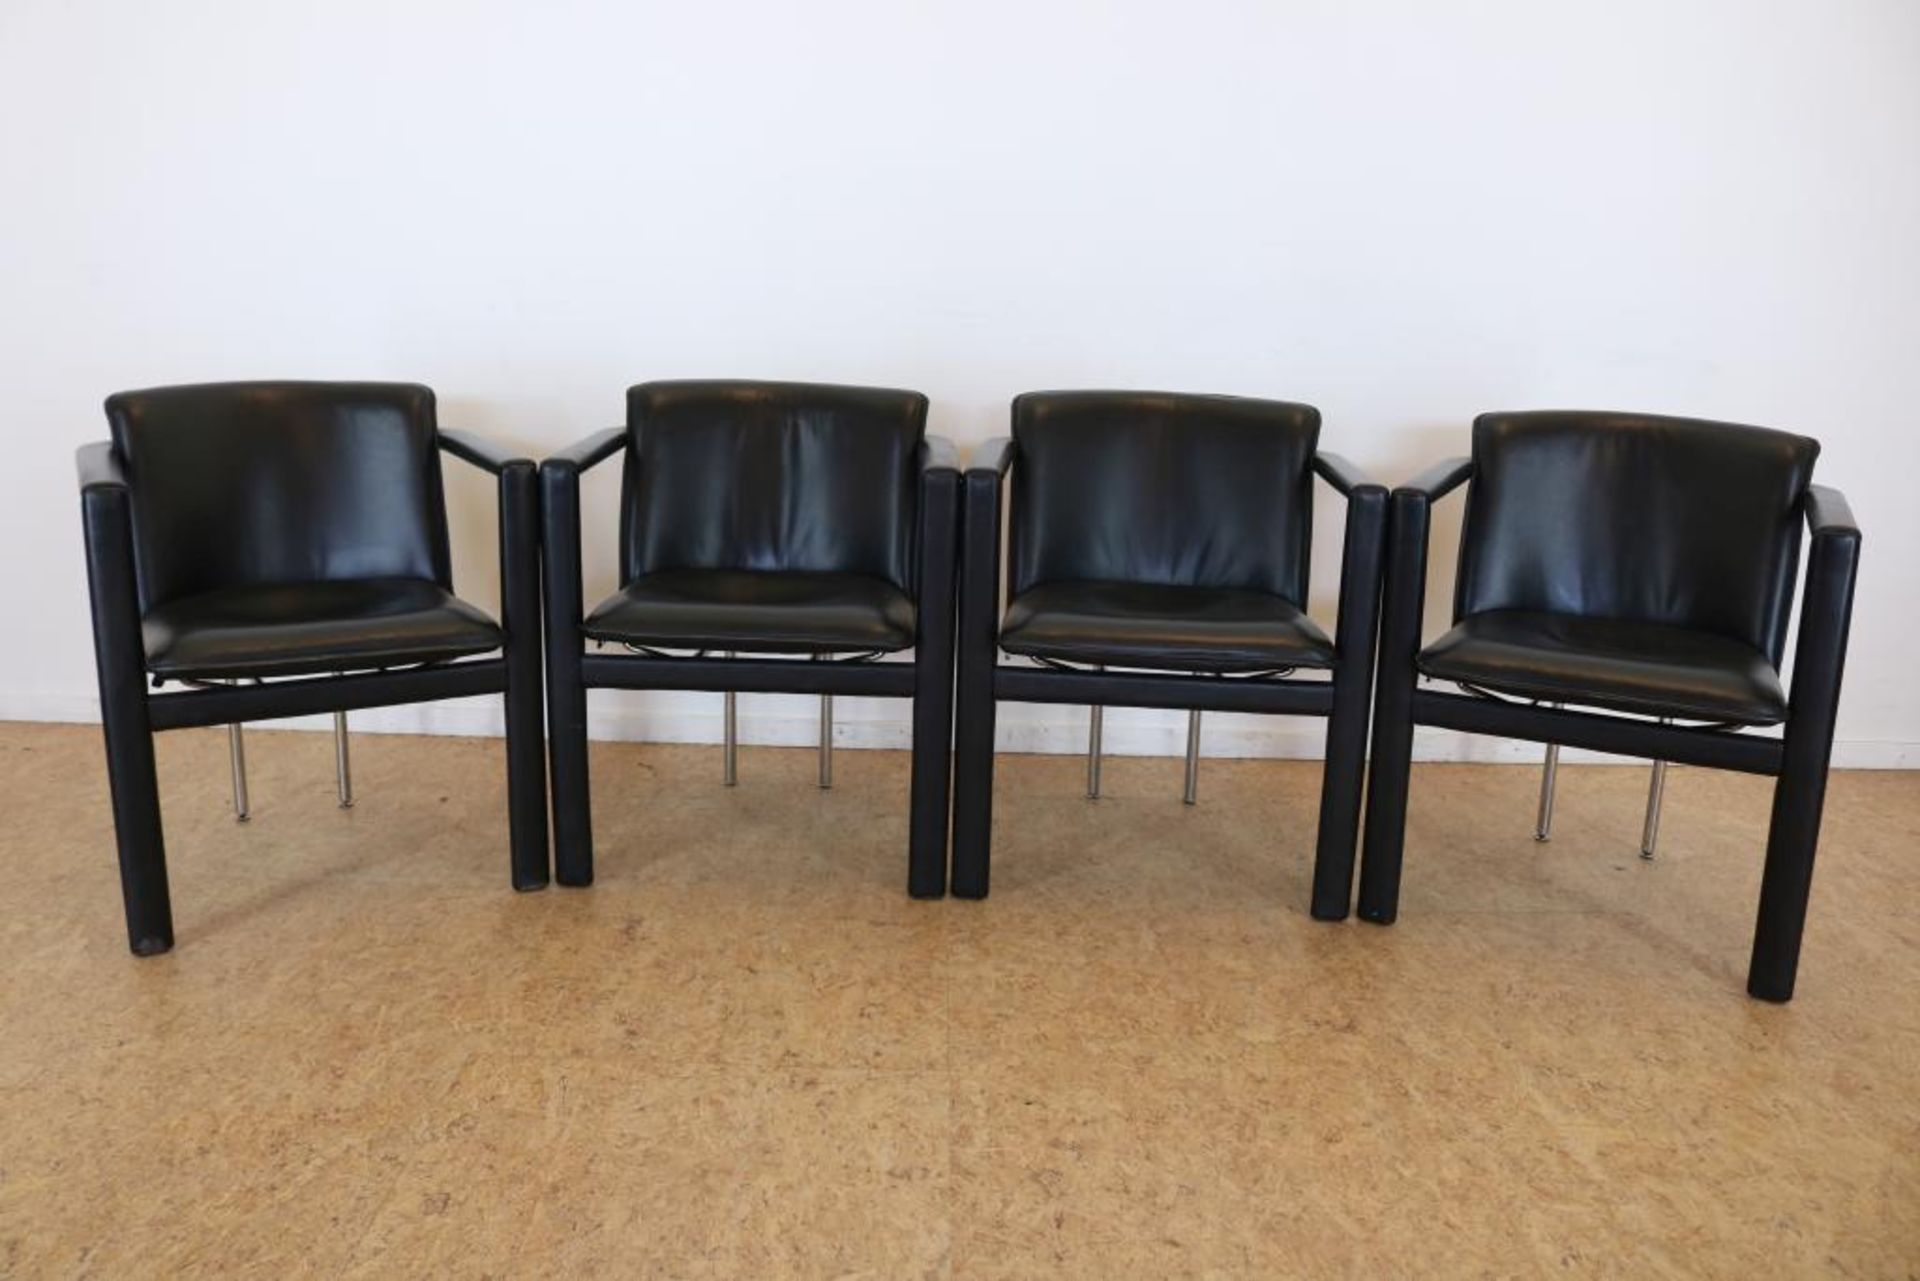 Serie van 4 design stoelen, Leolux